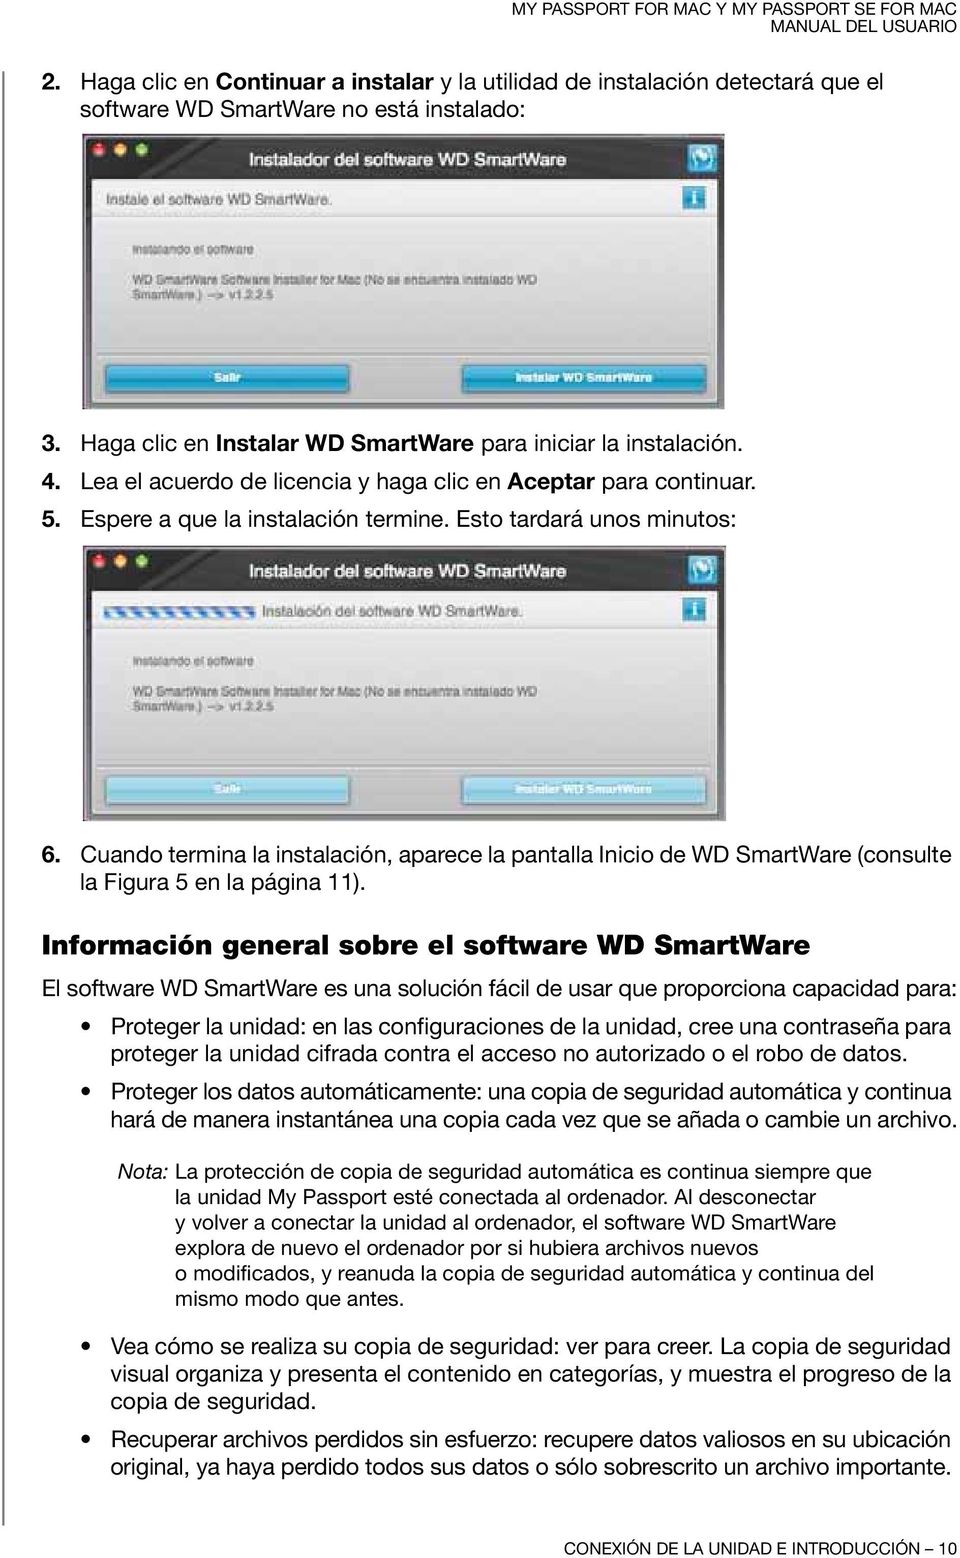 Cuando termina la instalación, aparece la pantalla Inicio de WD SmartWare (consulte la Figura 5 en la página 11).